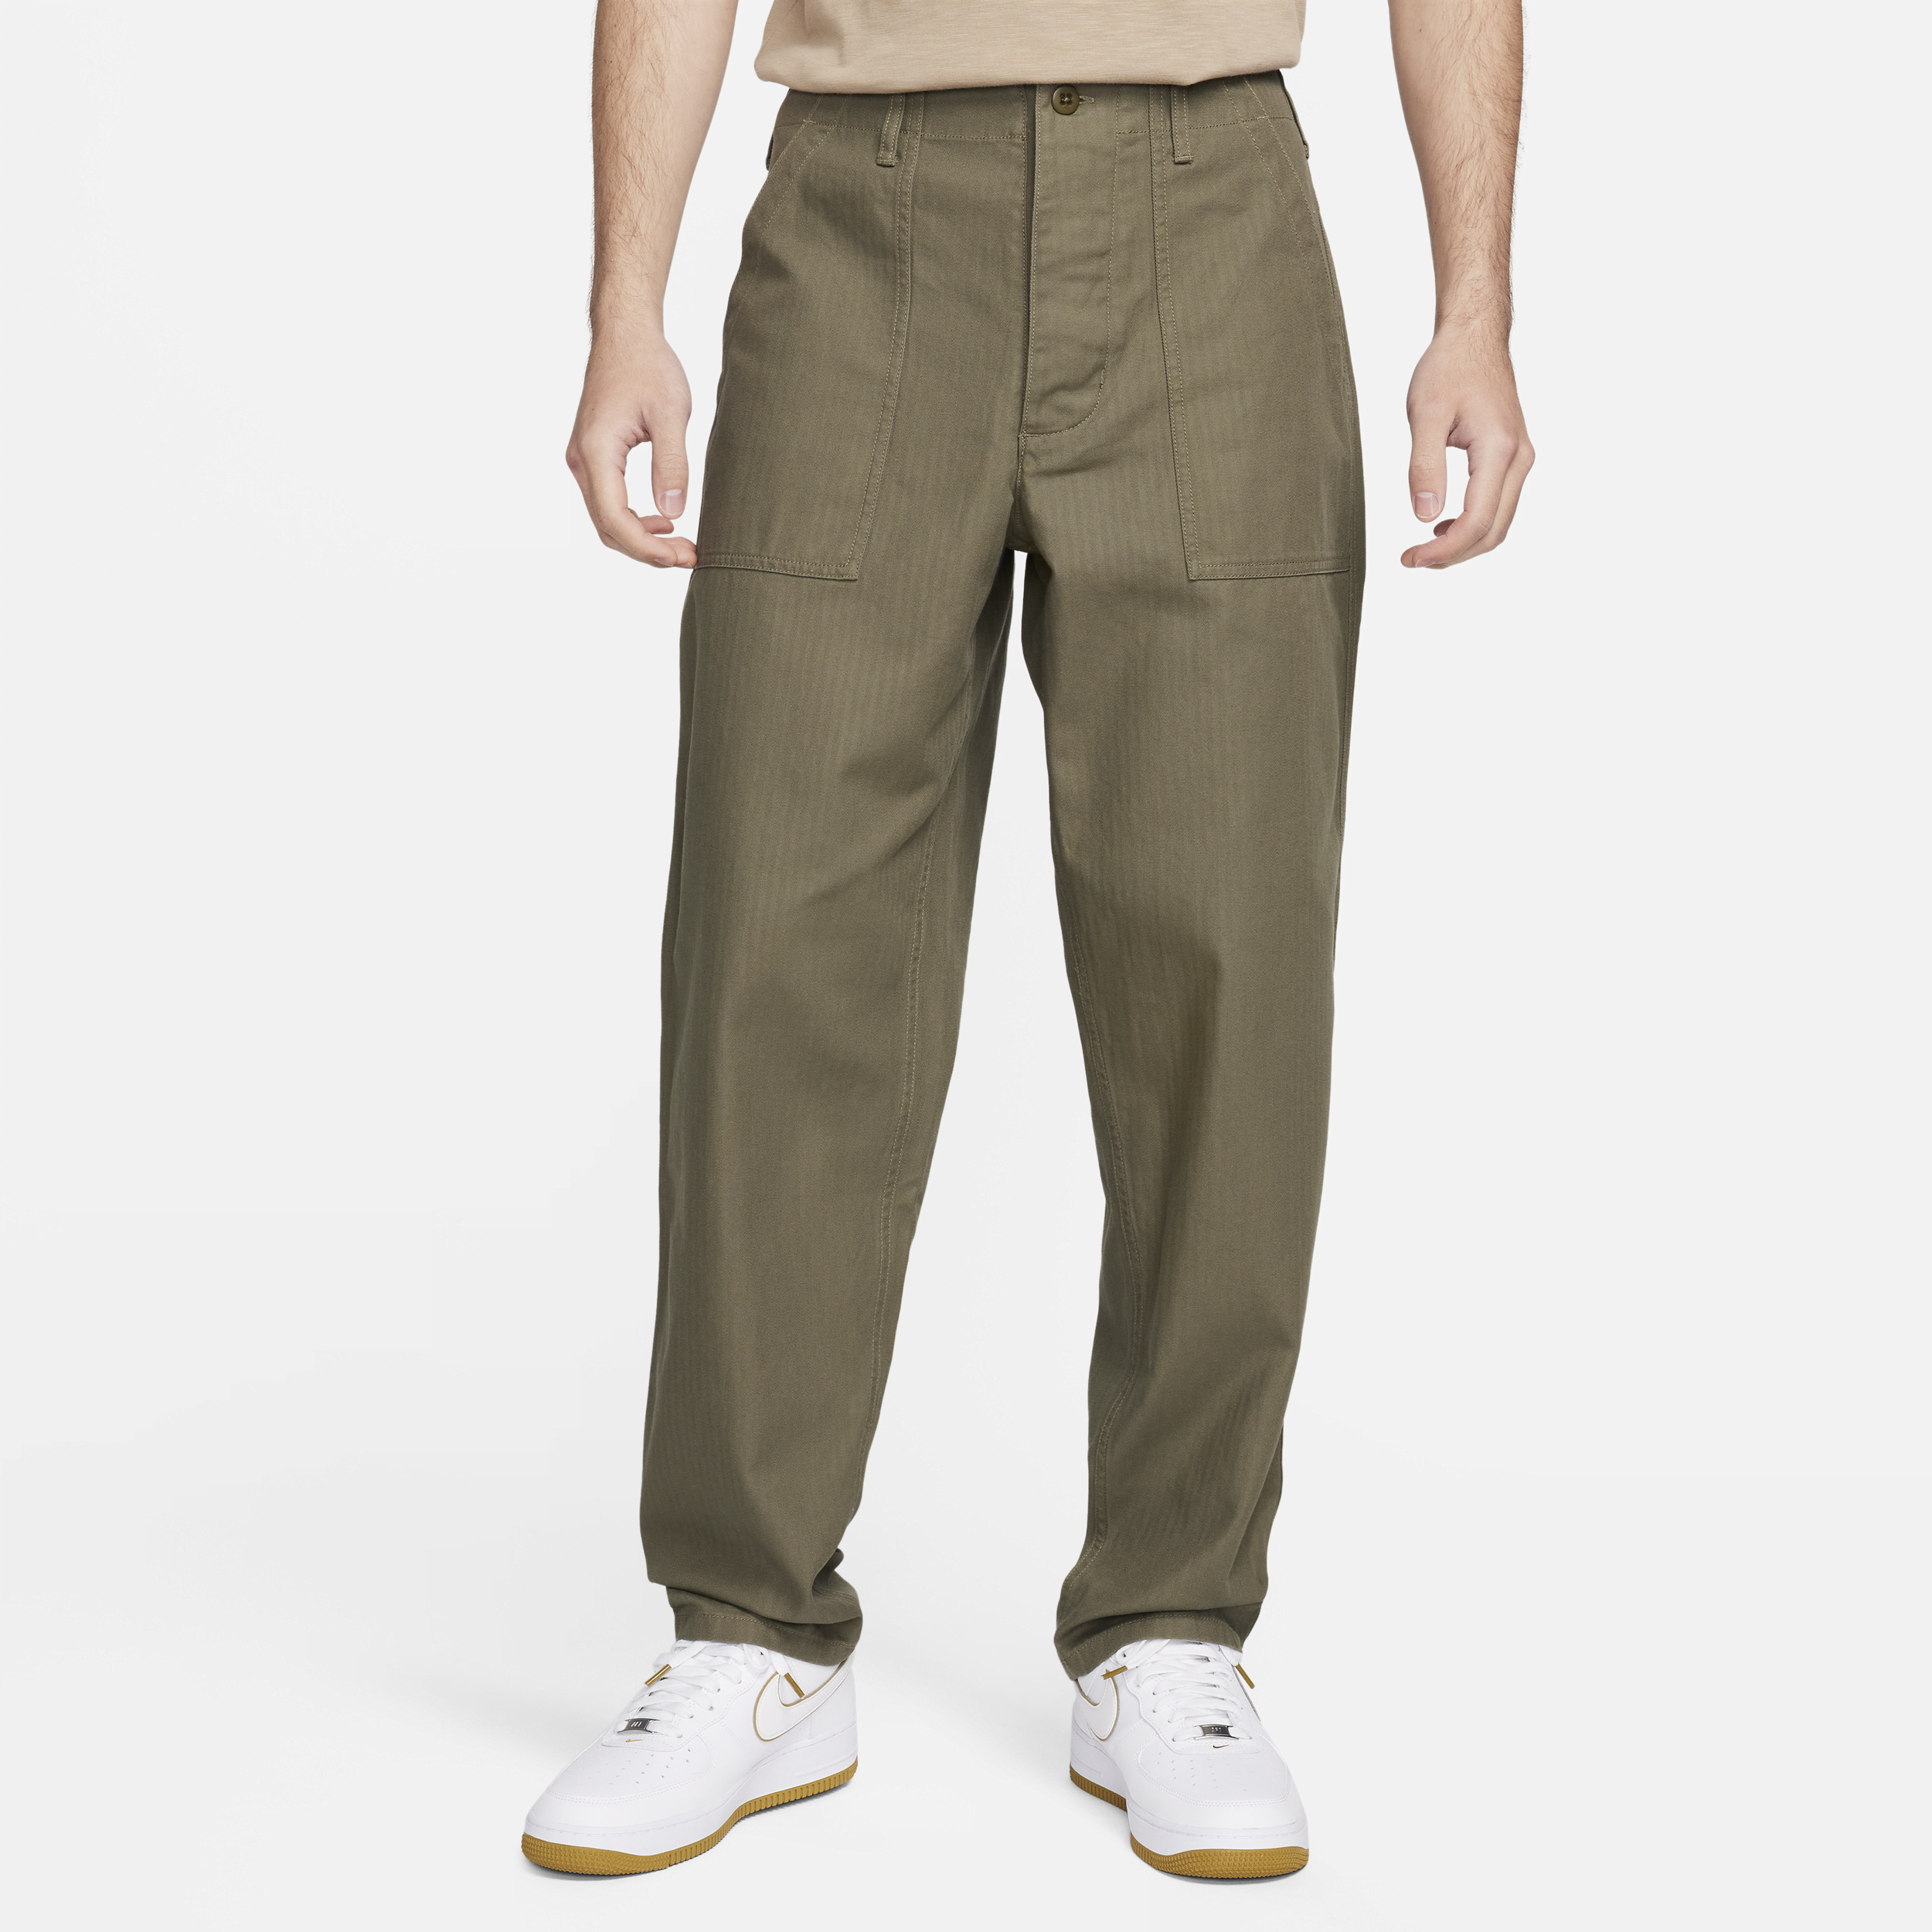 Nike Life-bukser til mænd - grøn